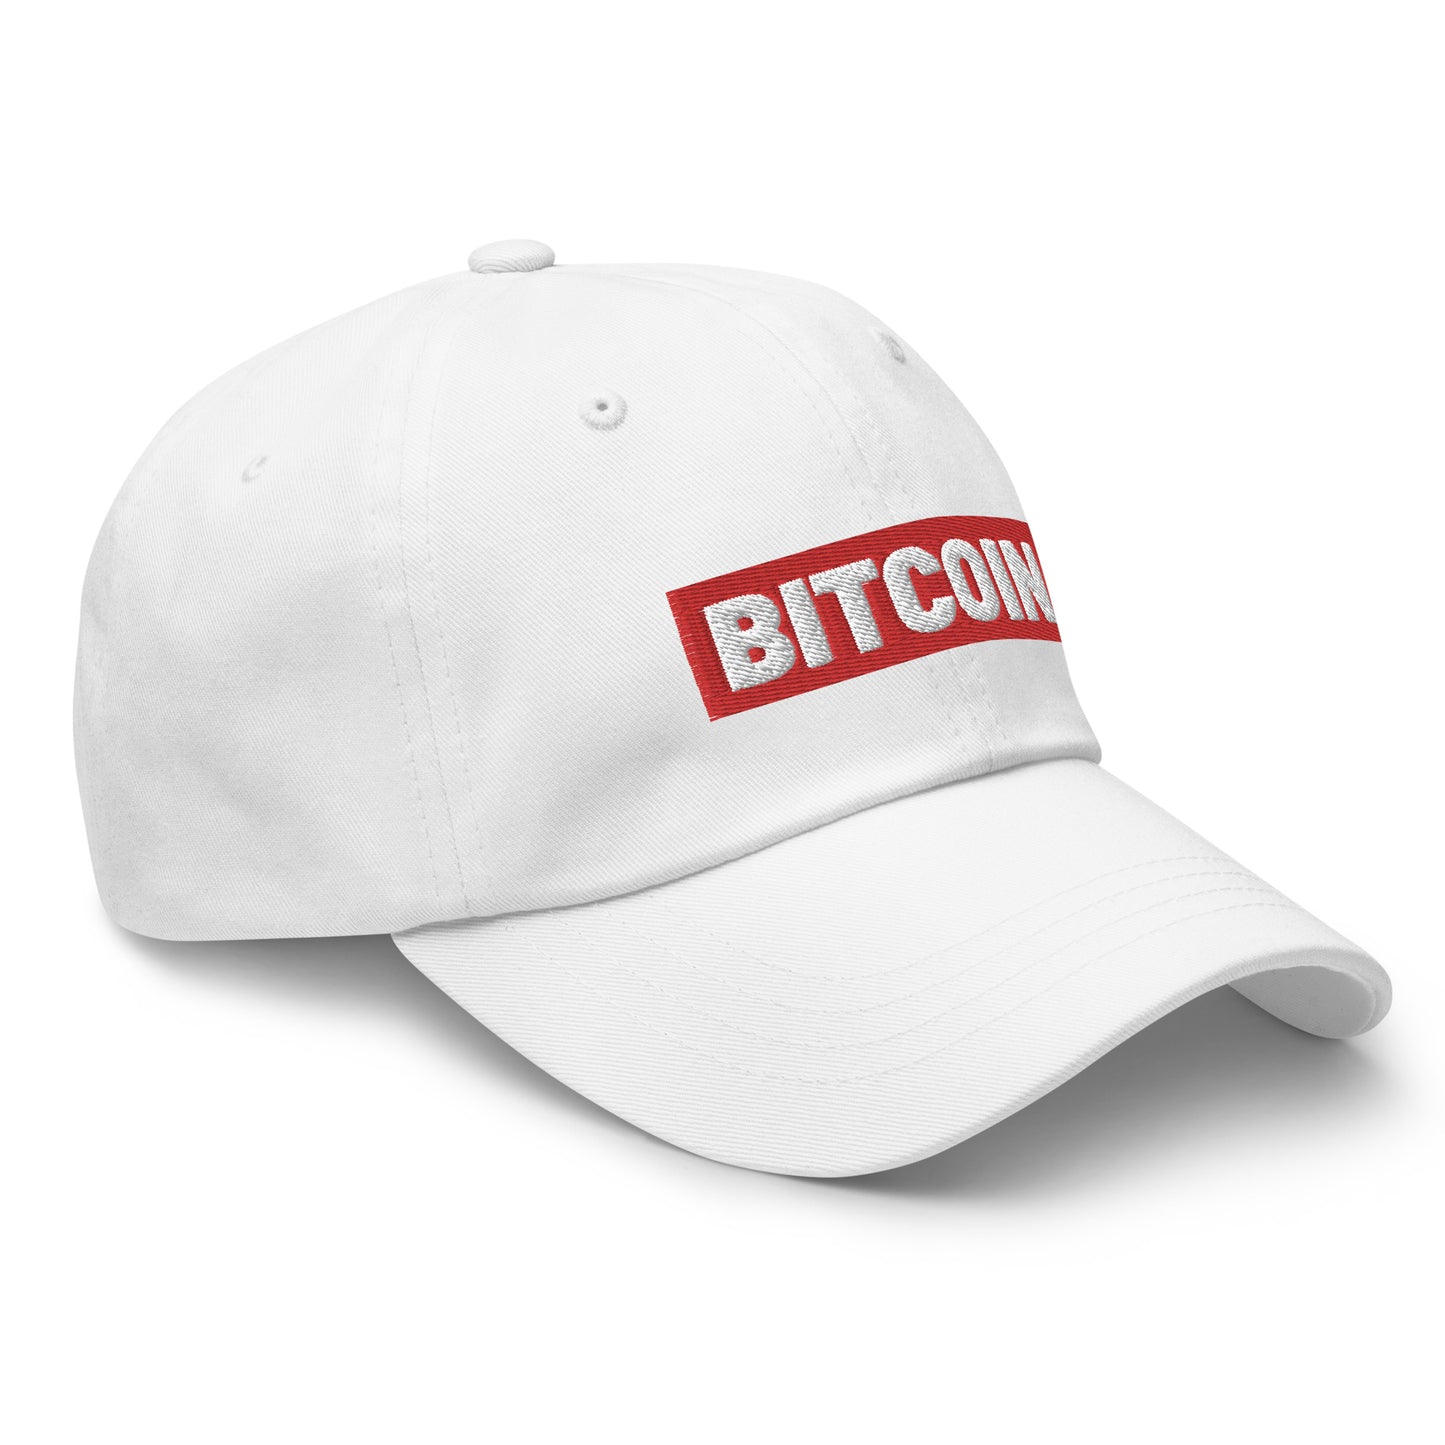 BITCOIN Comfort Basecap